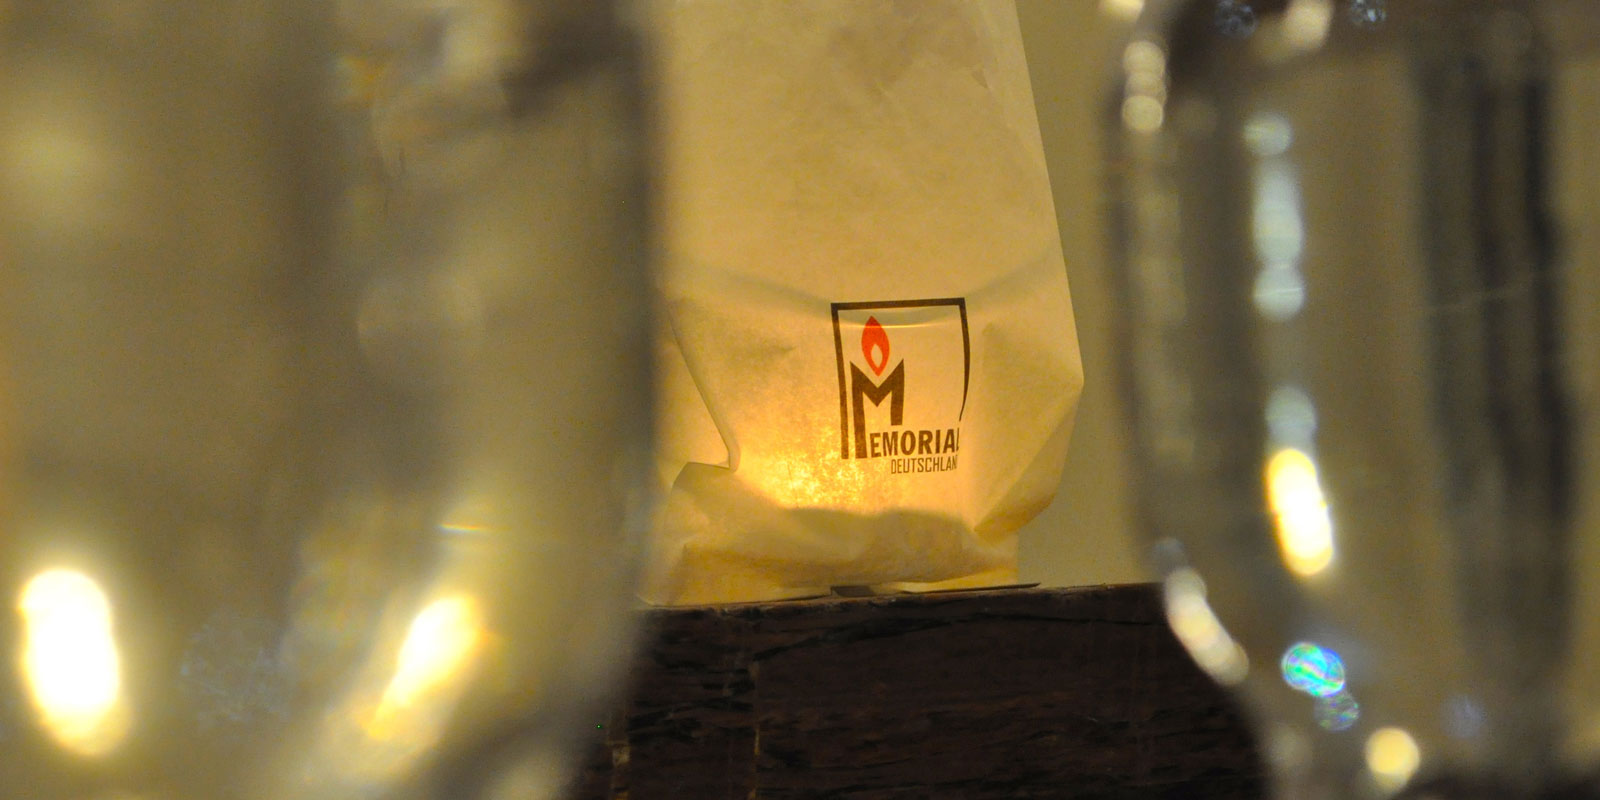 Eine Kerze brennt in einer Papiertüte mit den Logo von Memorial darauf